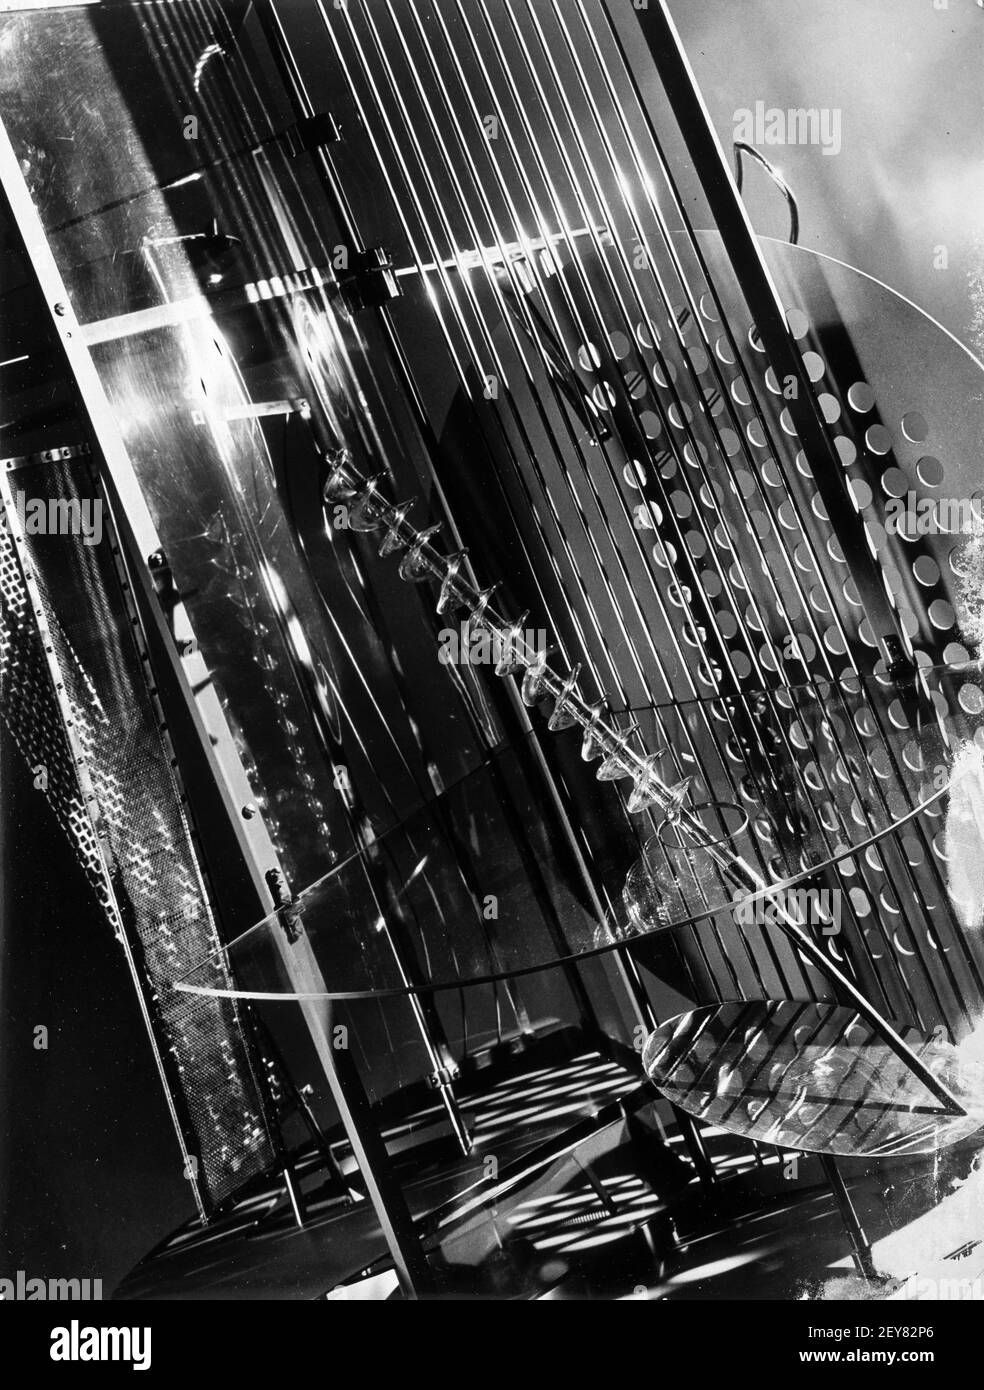 Moholy-Nagy. Foto mit dem Titel "Light Space Modulator" des ungarischen Künstlers und Fotografen László Moholy-Nagy (geb. László Weisz, 1895-1946), Silbergelatine-Druck, 1922-1930 Stockfoto